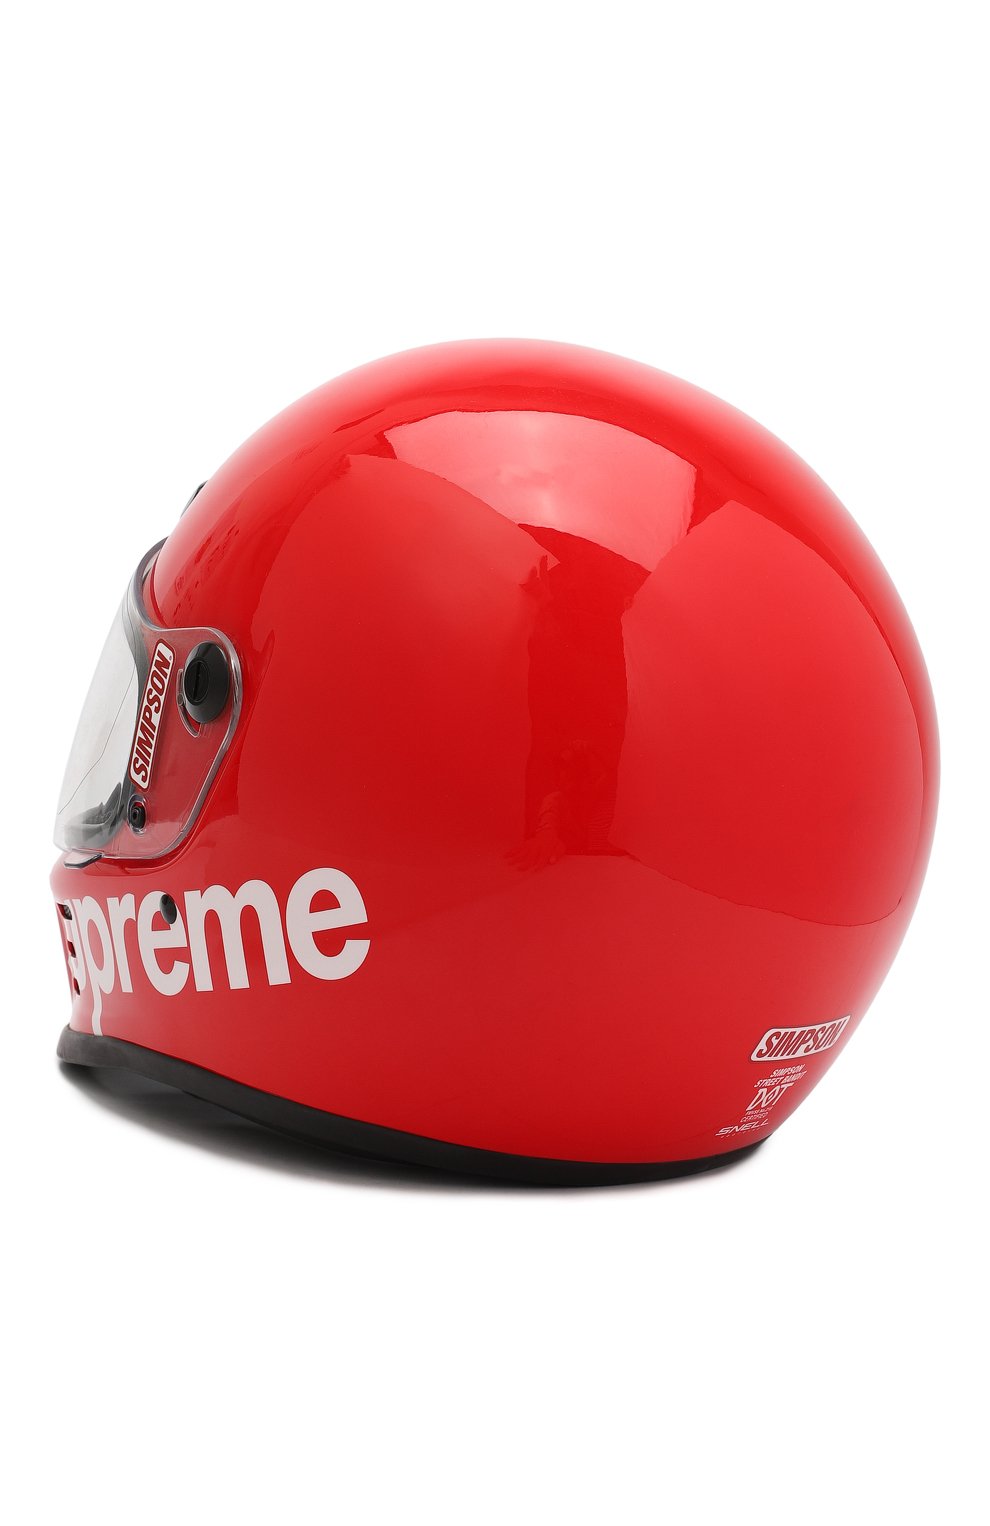 Шлем для картинга | Supreme | Красный - 2